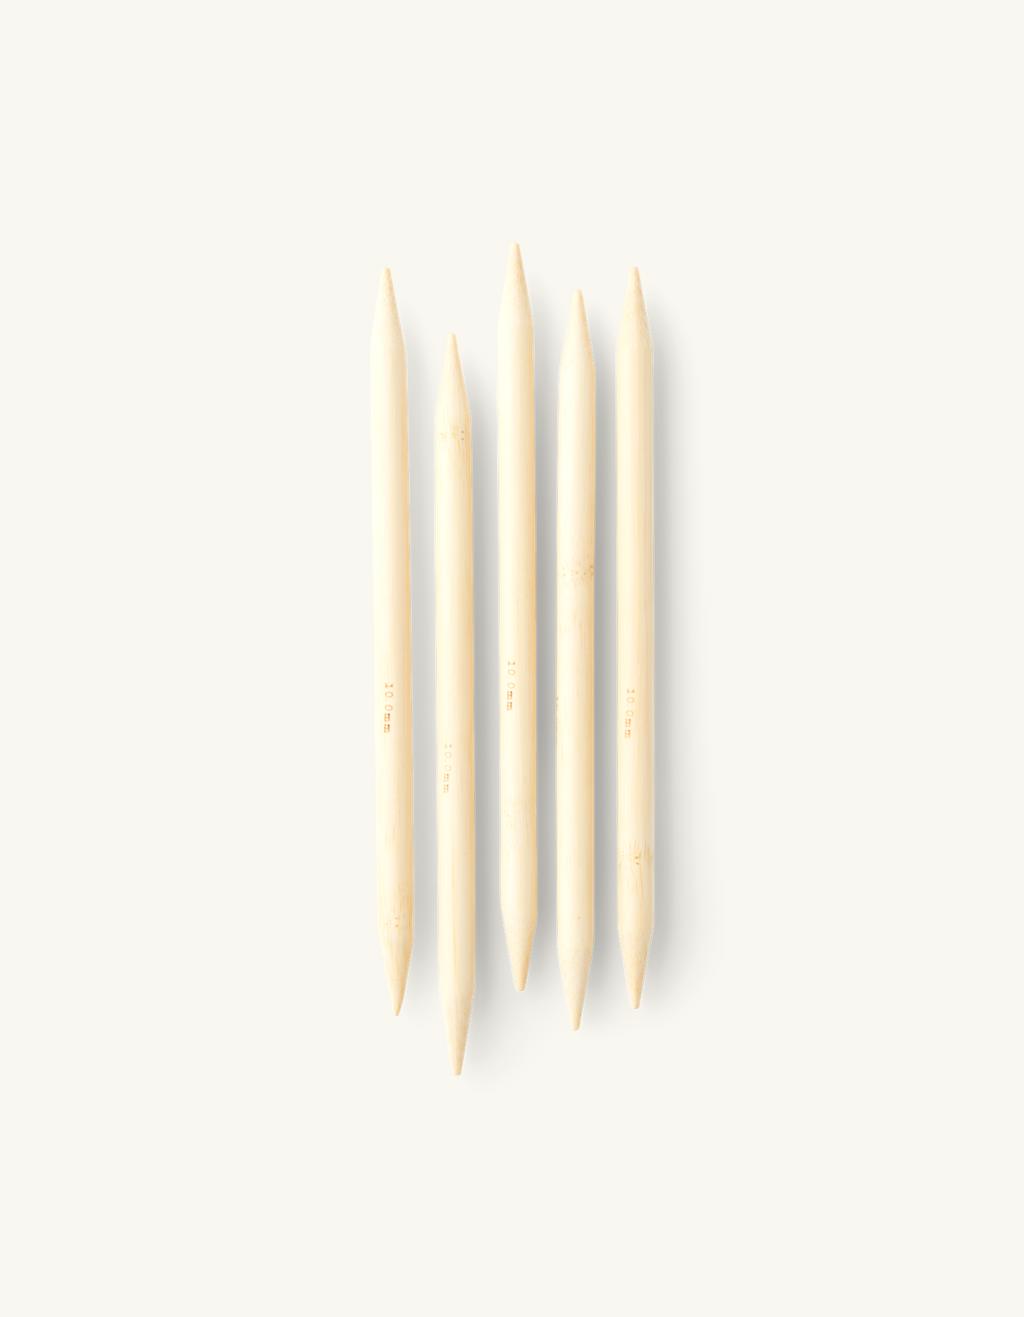 Strømpepinde 10 | Bambus. 10 mm x 20 cm. 5 | Søstrene Grene